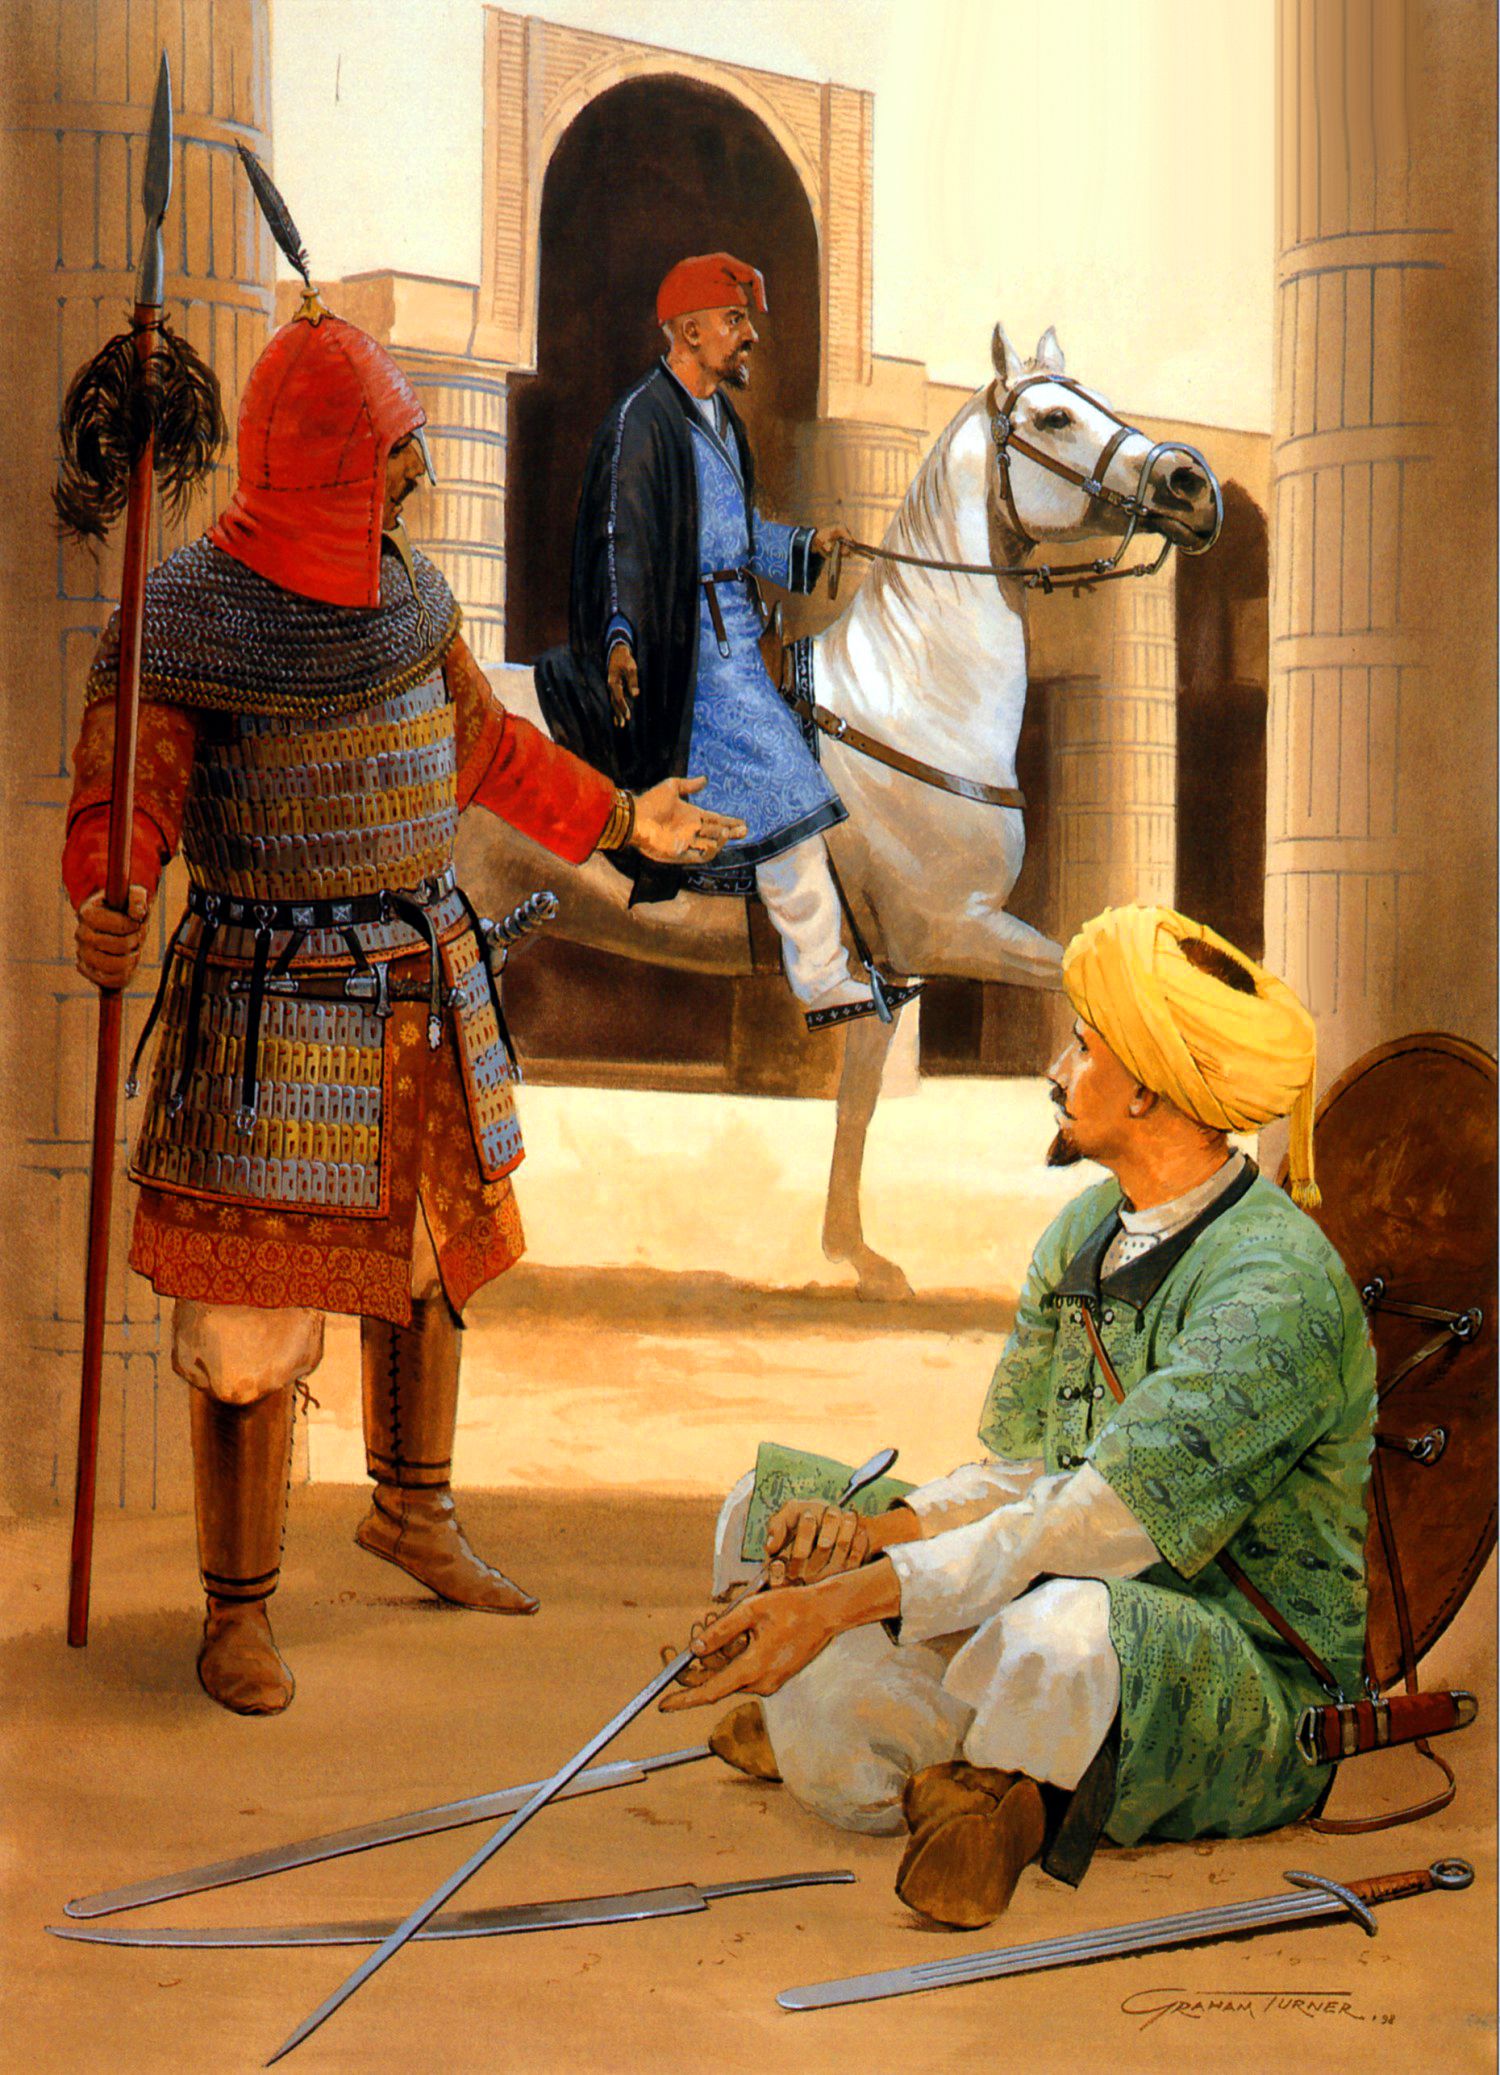 желтый крестовый поход монголов падение багдада 1258 отвратительные мужики disgusting men